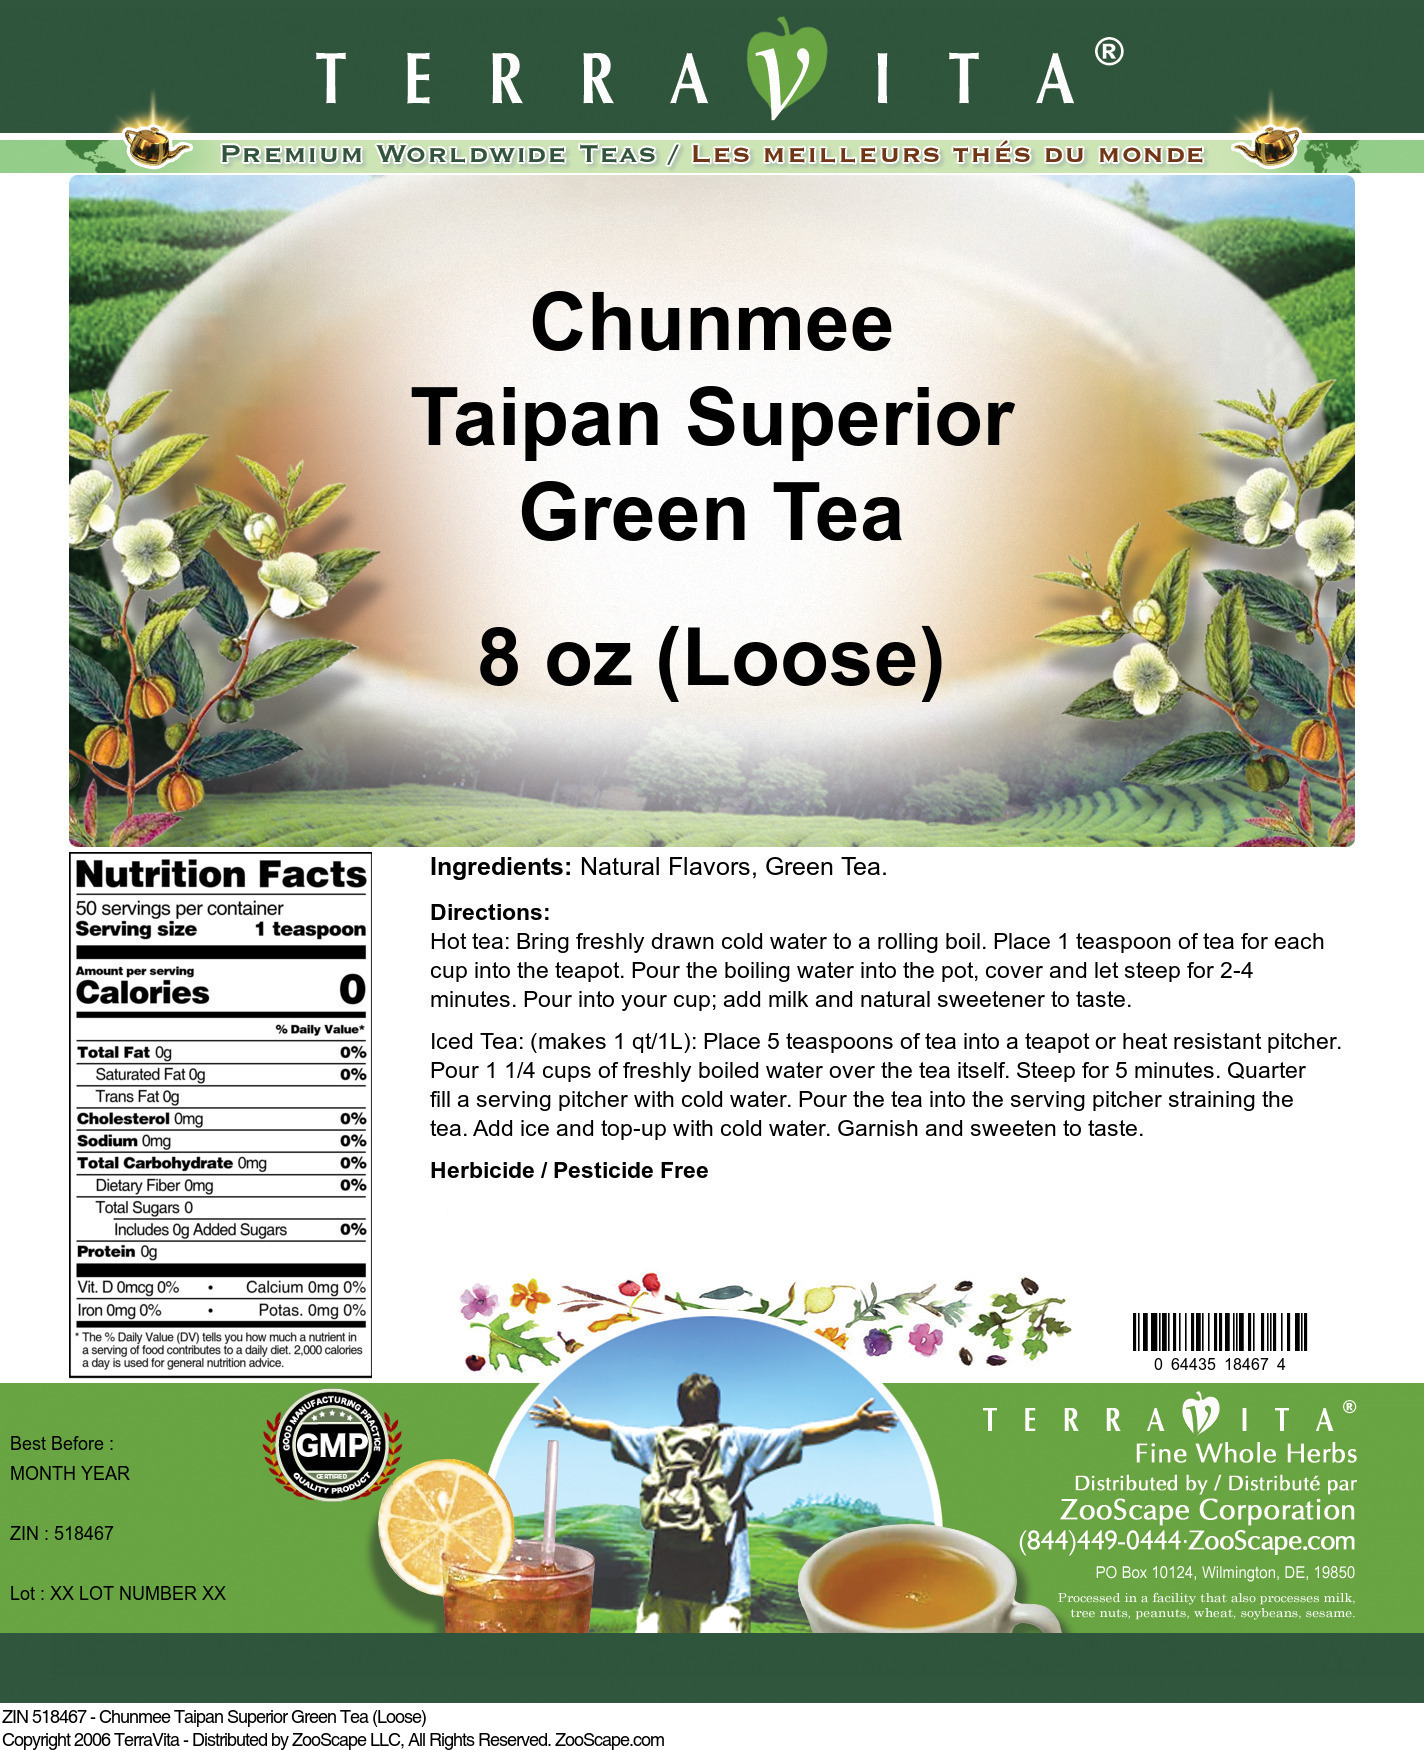 Chunmee Taipan Superior Green Tea (Loose) - Label